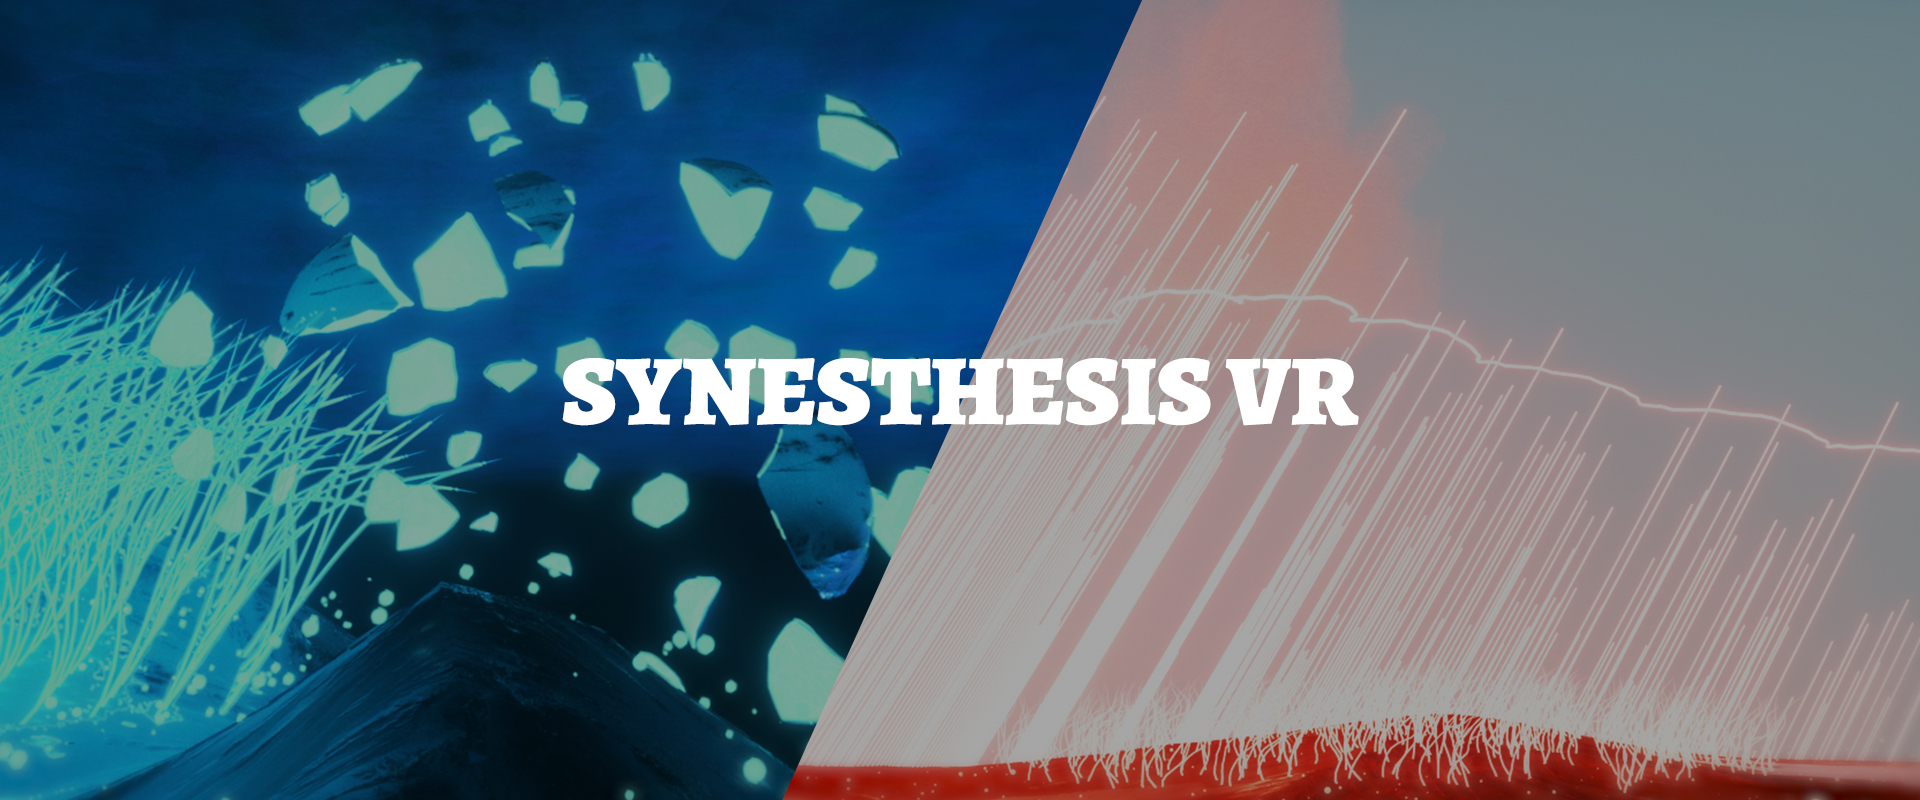 Synesthesis VR